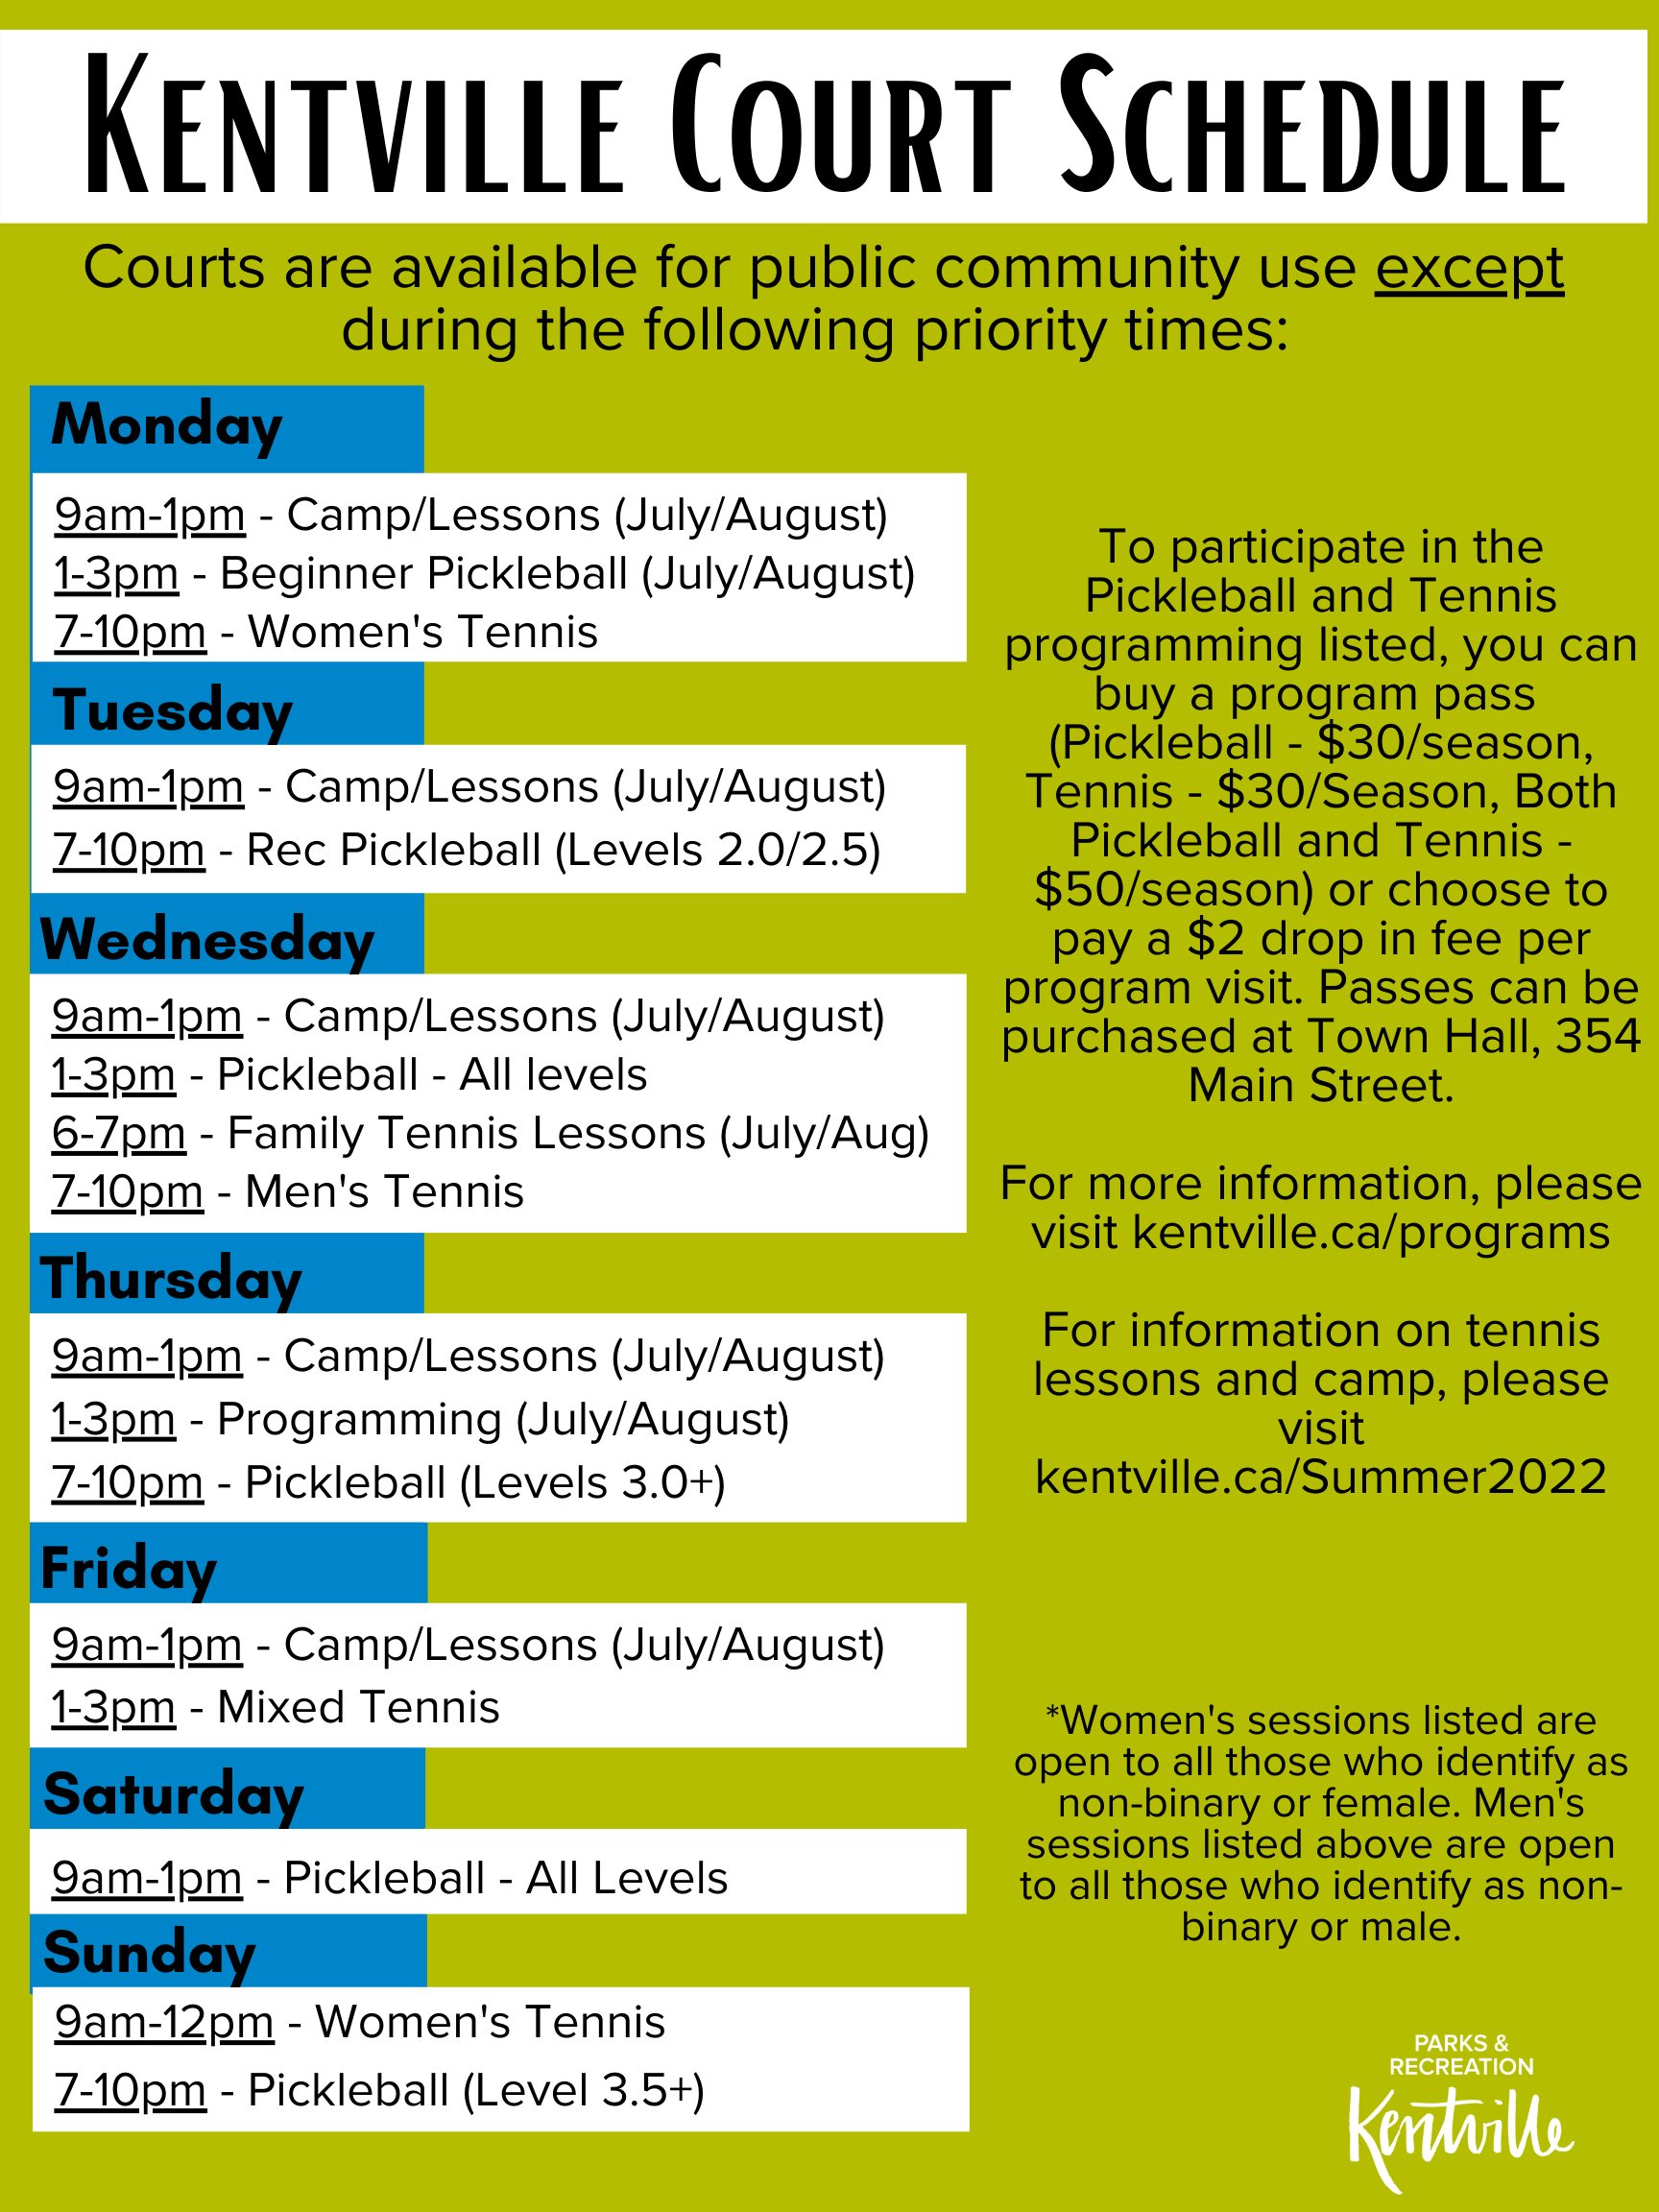 Kentville Tennis/Pickleball Court schedule for summer 2022